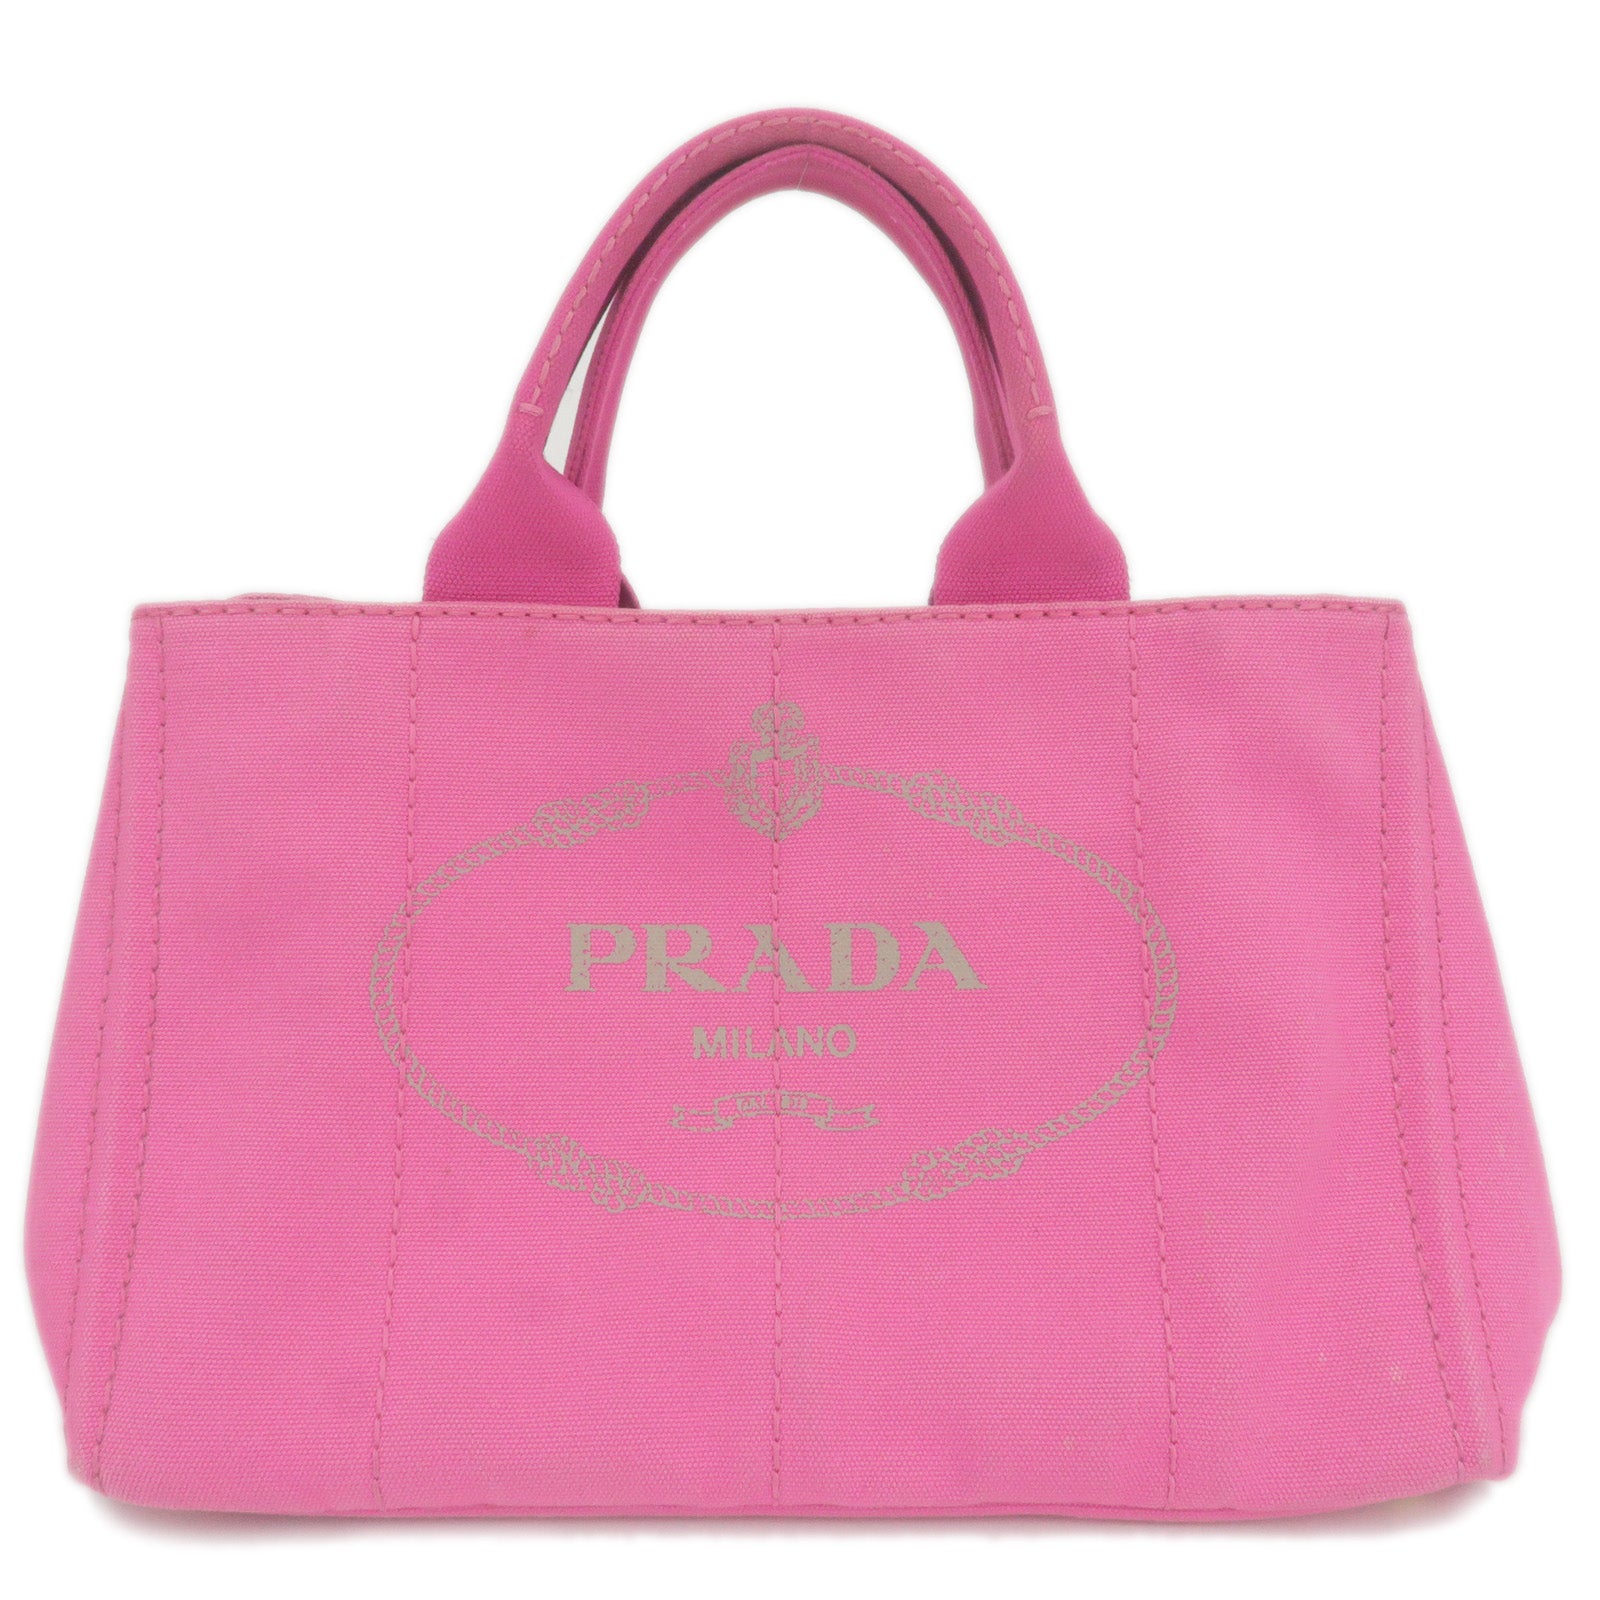 PRADA-Logo-Canapa-Canvas-Tote-Bag-Hand-Bag-Pink-B1877G